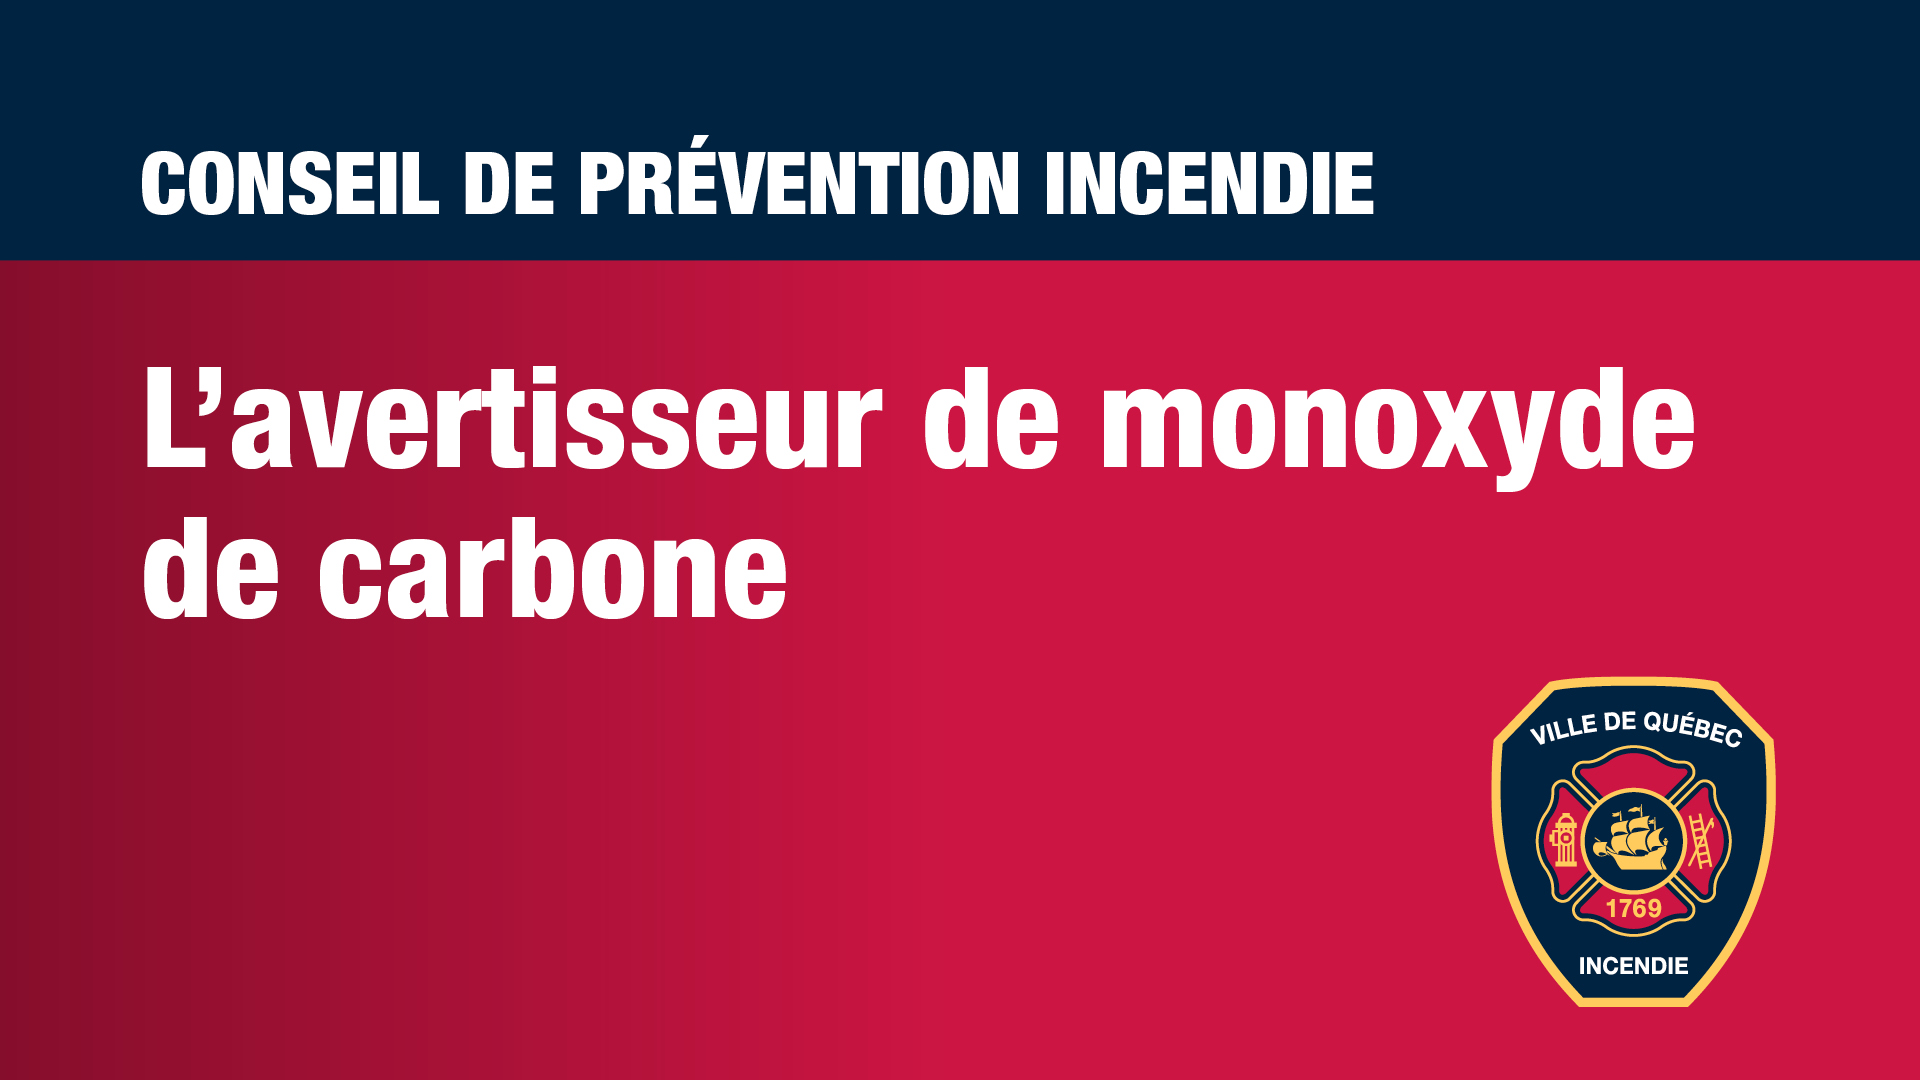 Conseils de prévention - Avertisseur de monoxyde de carbone.